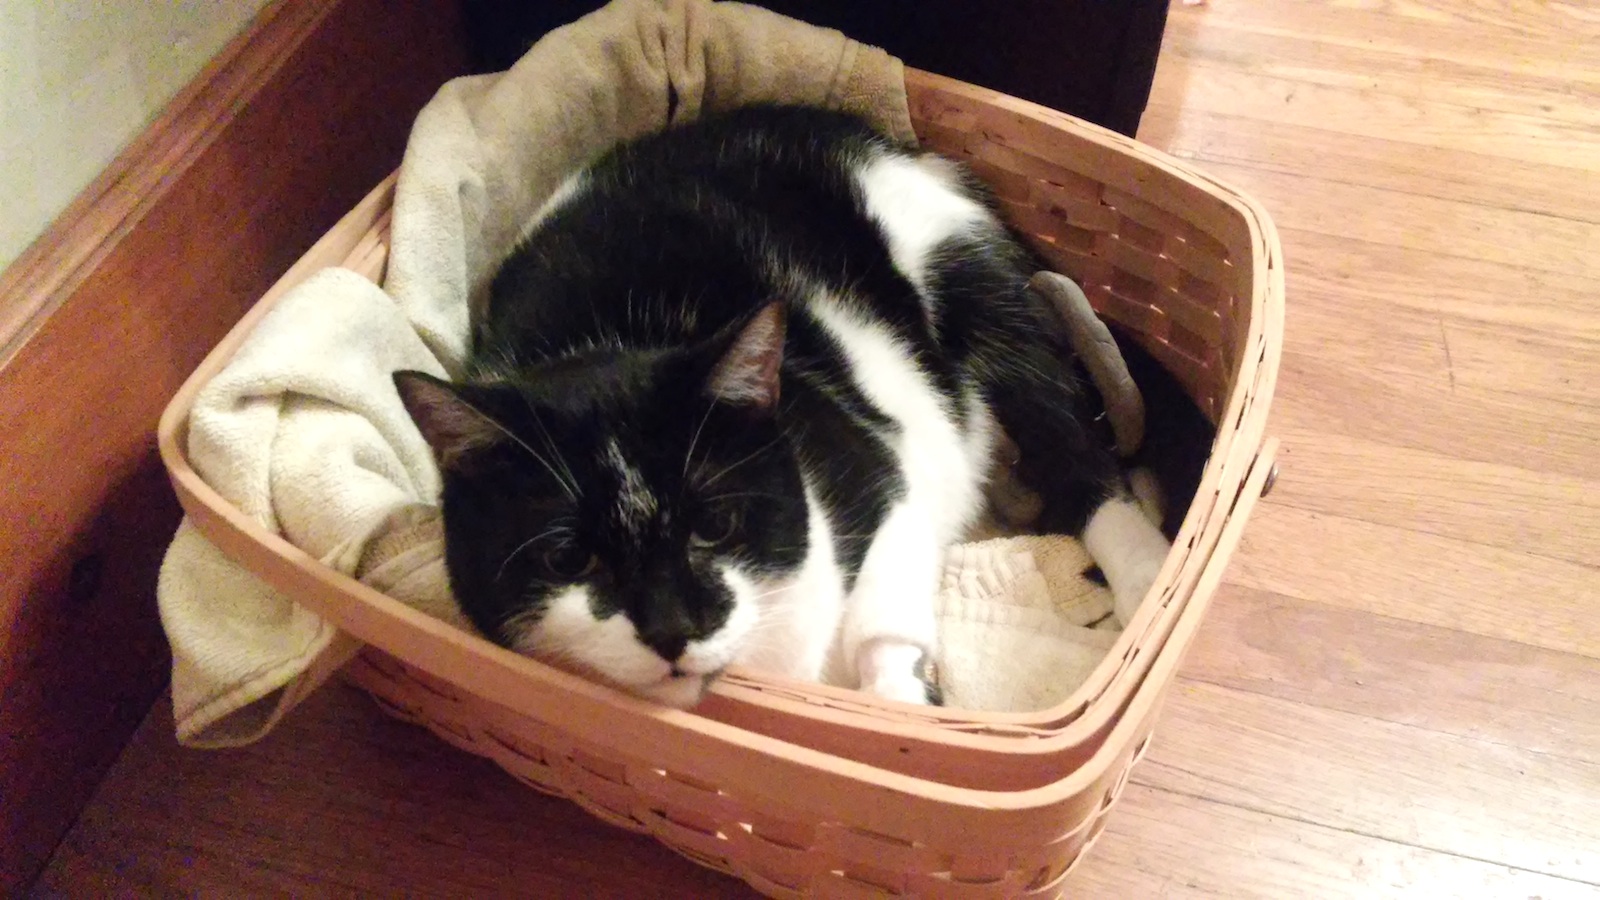 Panda in a basket